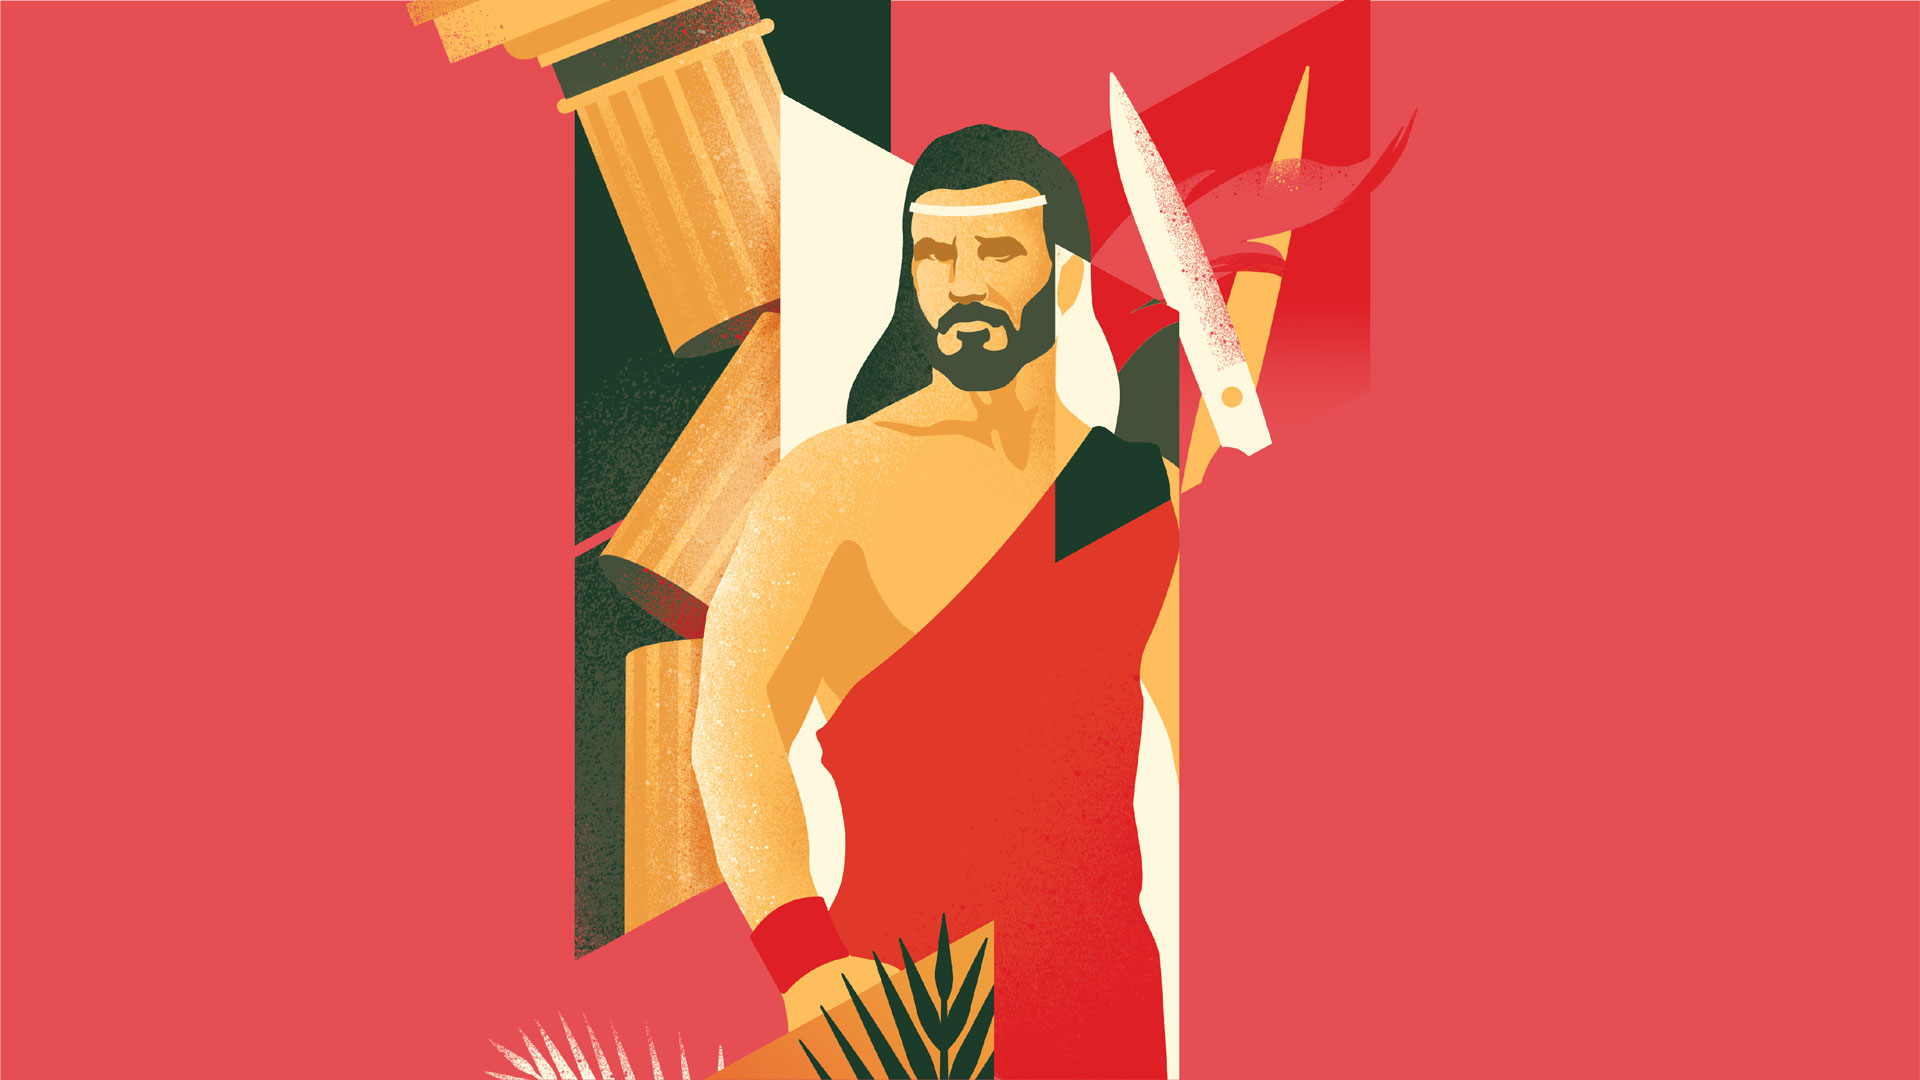 Illustration of Samson including scissors, ferns, and a broken pillar